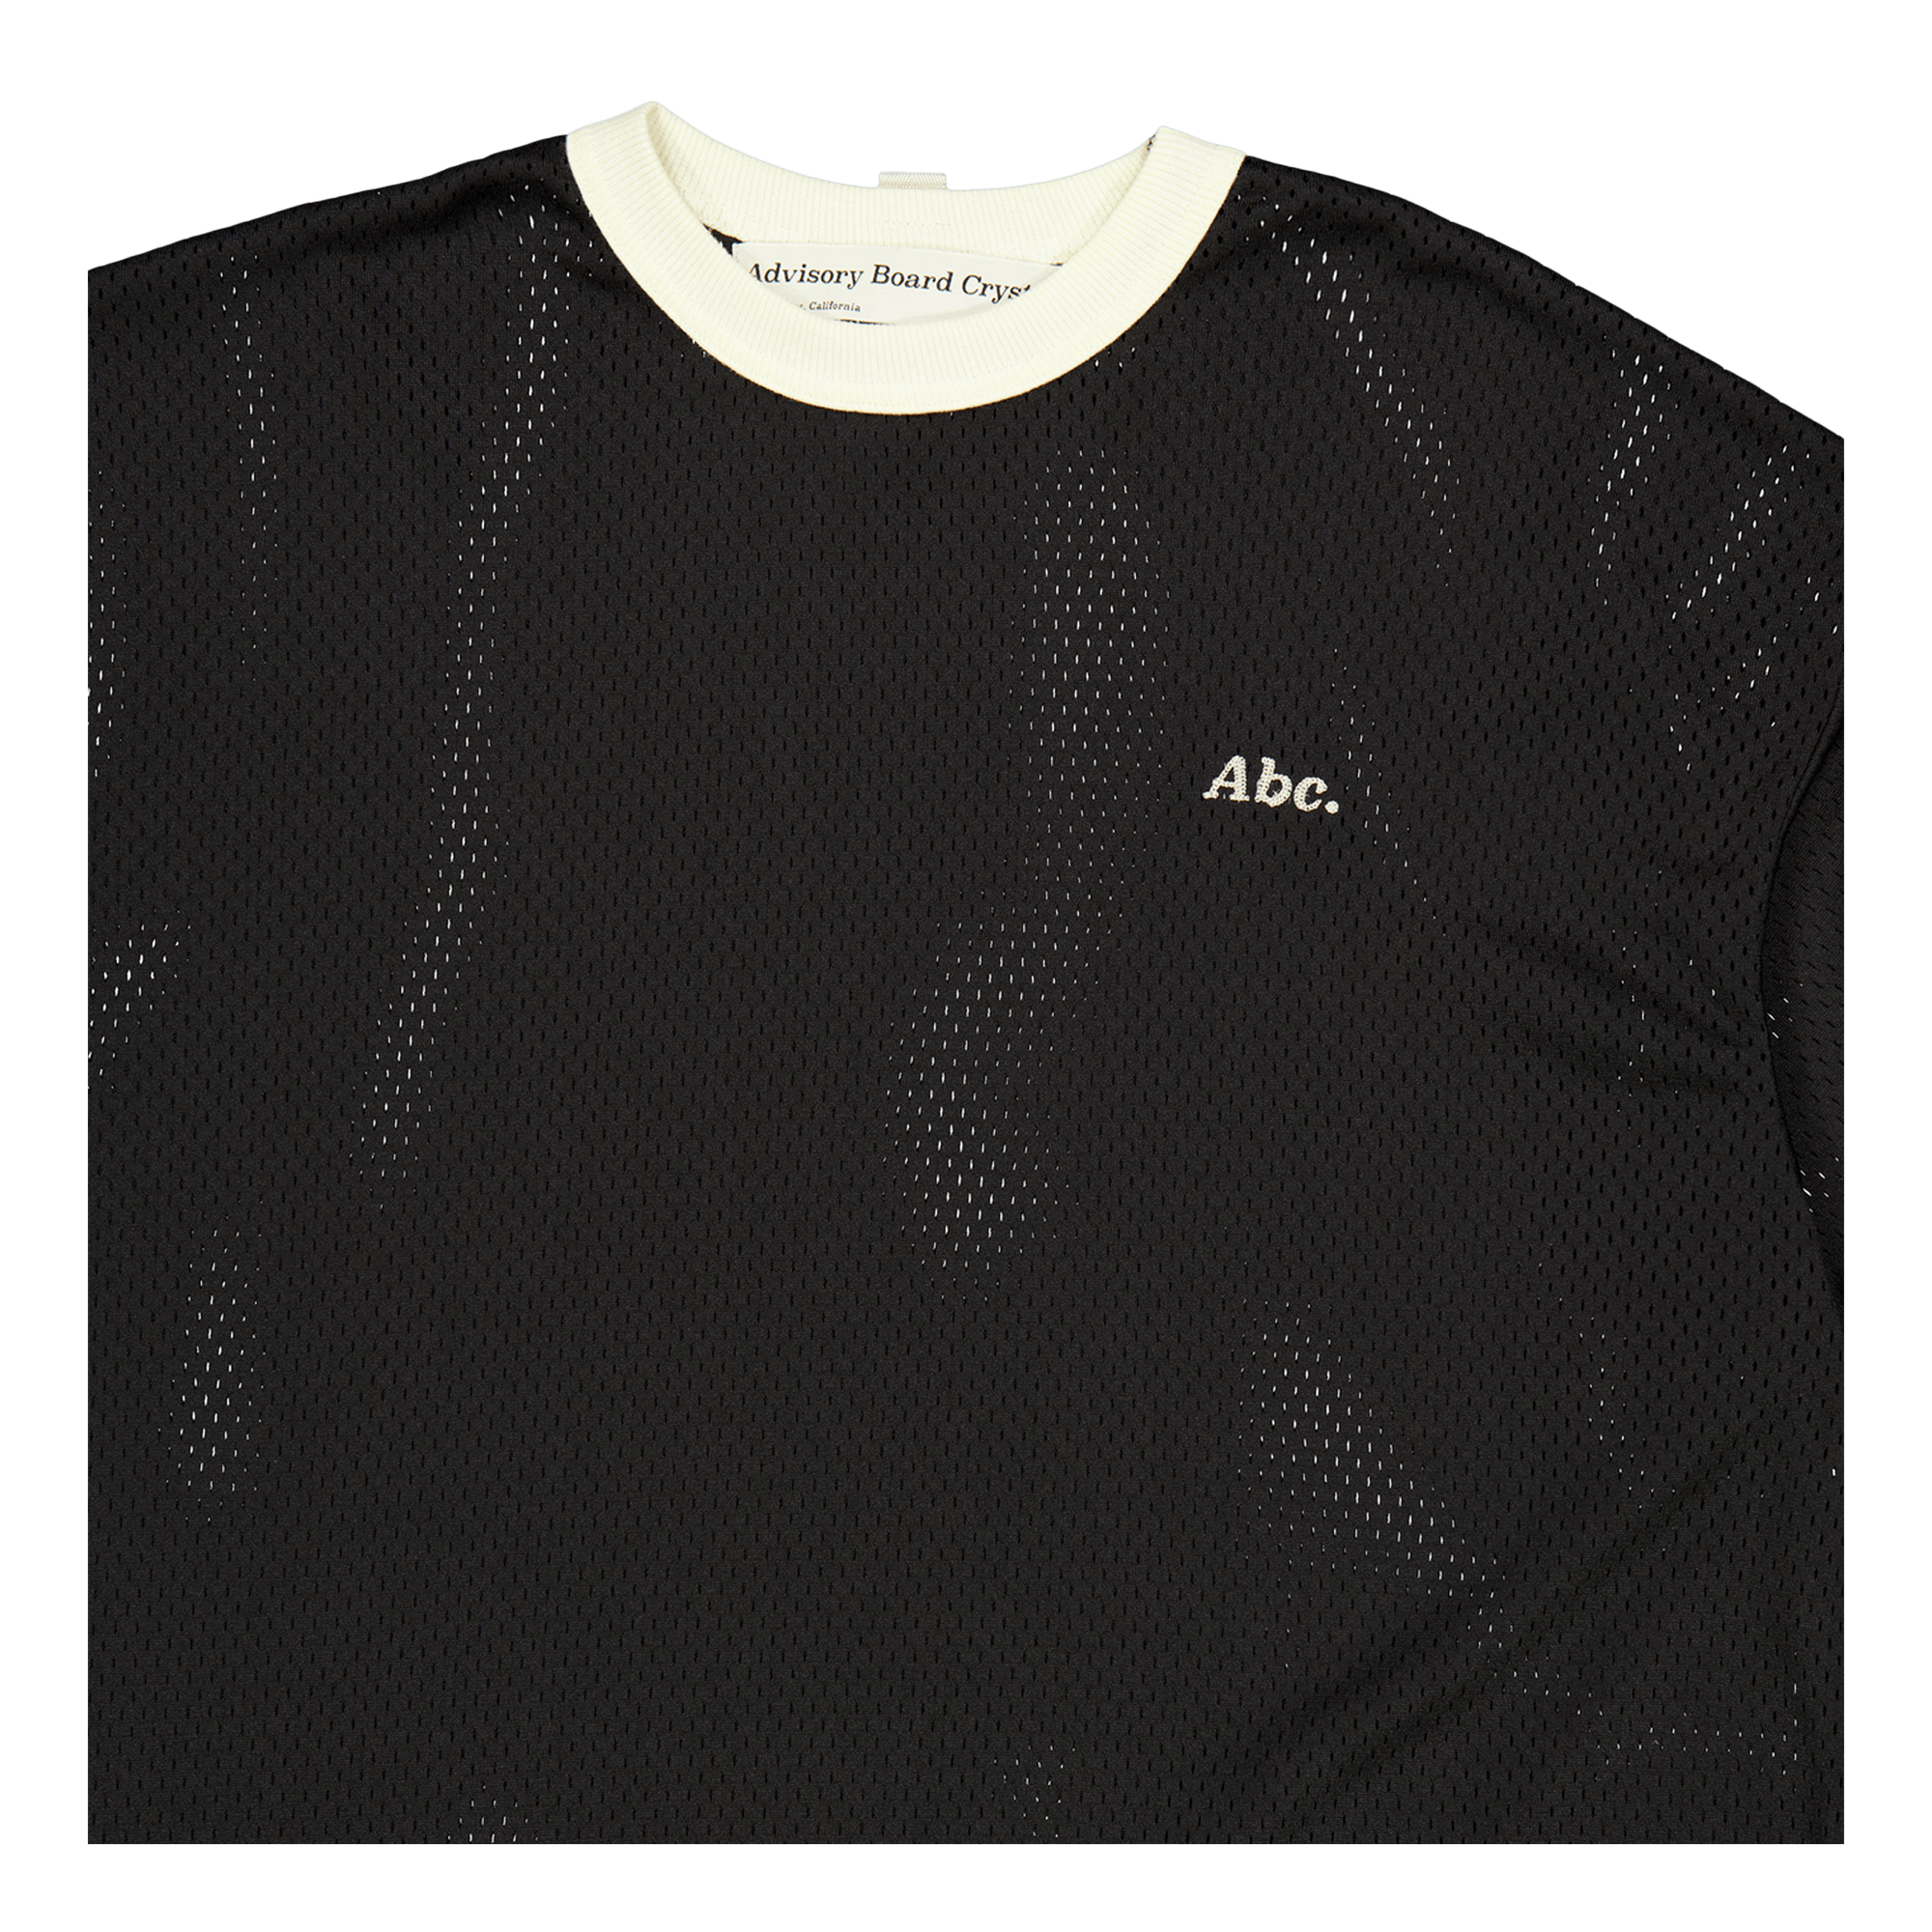 Abc. 123 Mesh Ringer T-shirt Black